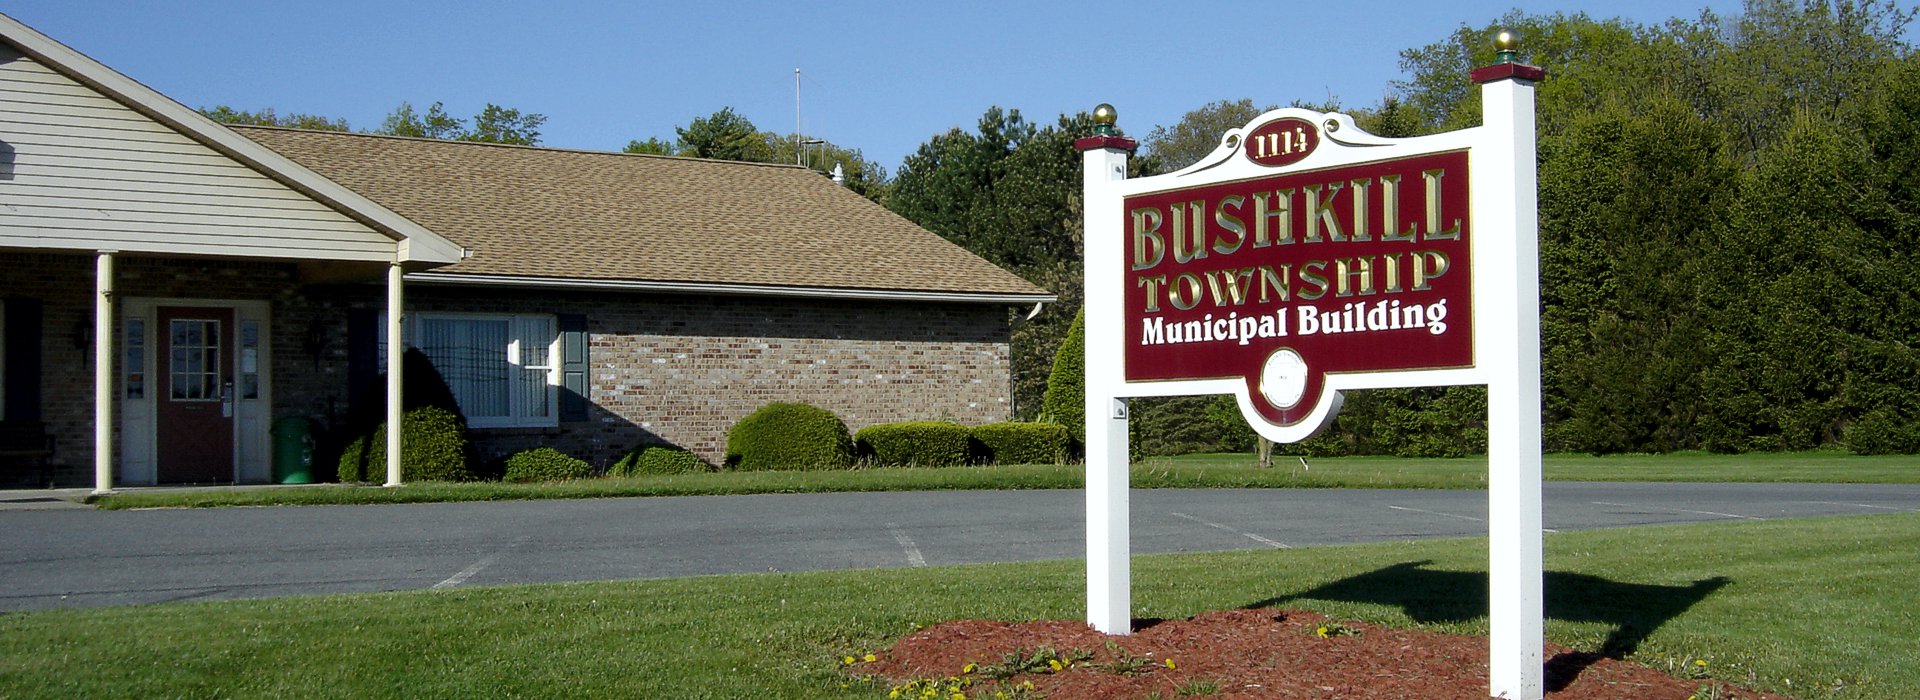 Bushkill Township